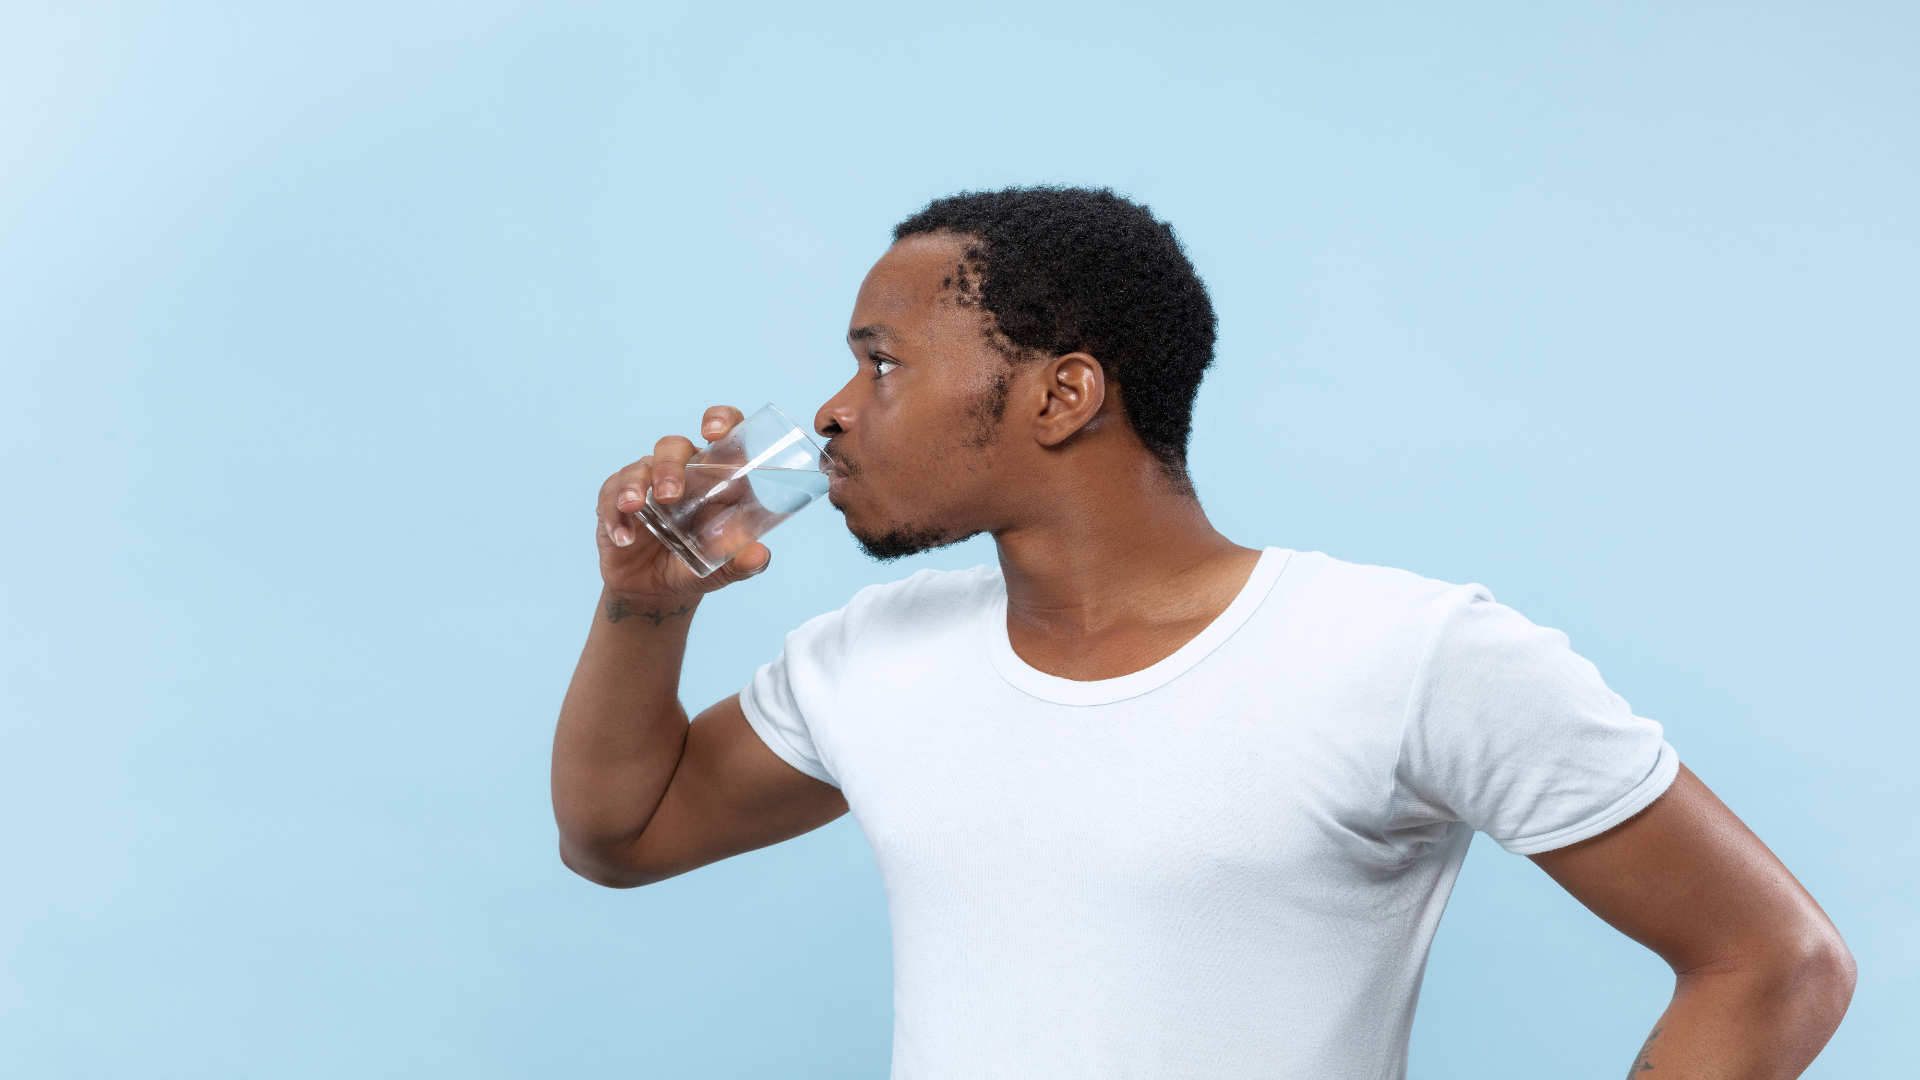 Foto de capa do artigo "Ingestão de água: importância e dicas para aumentar o consumo"